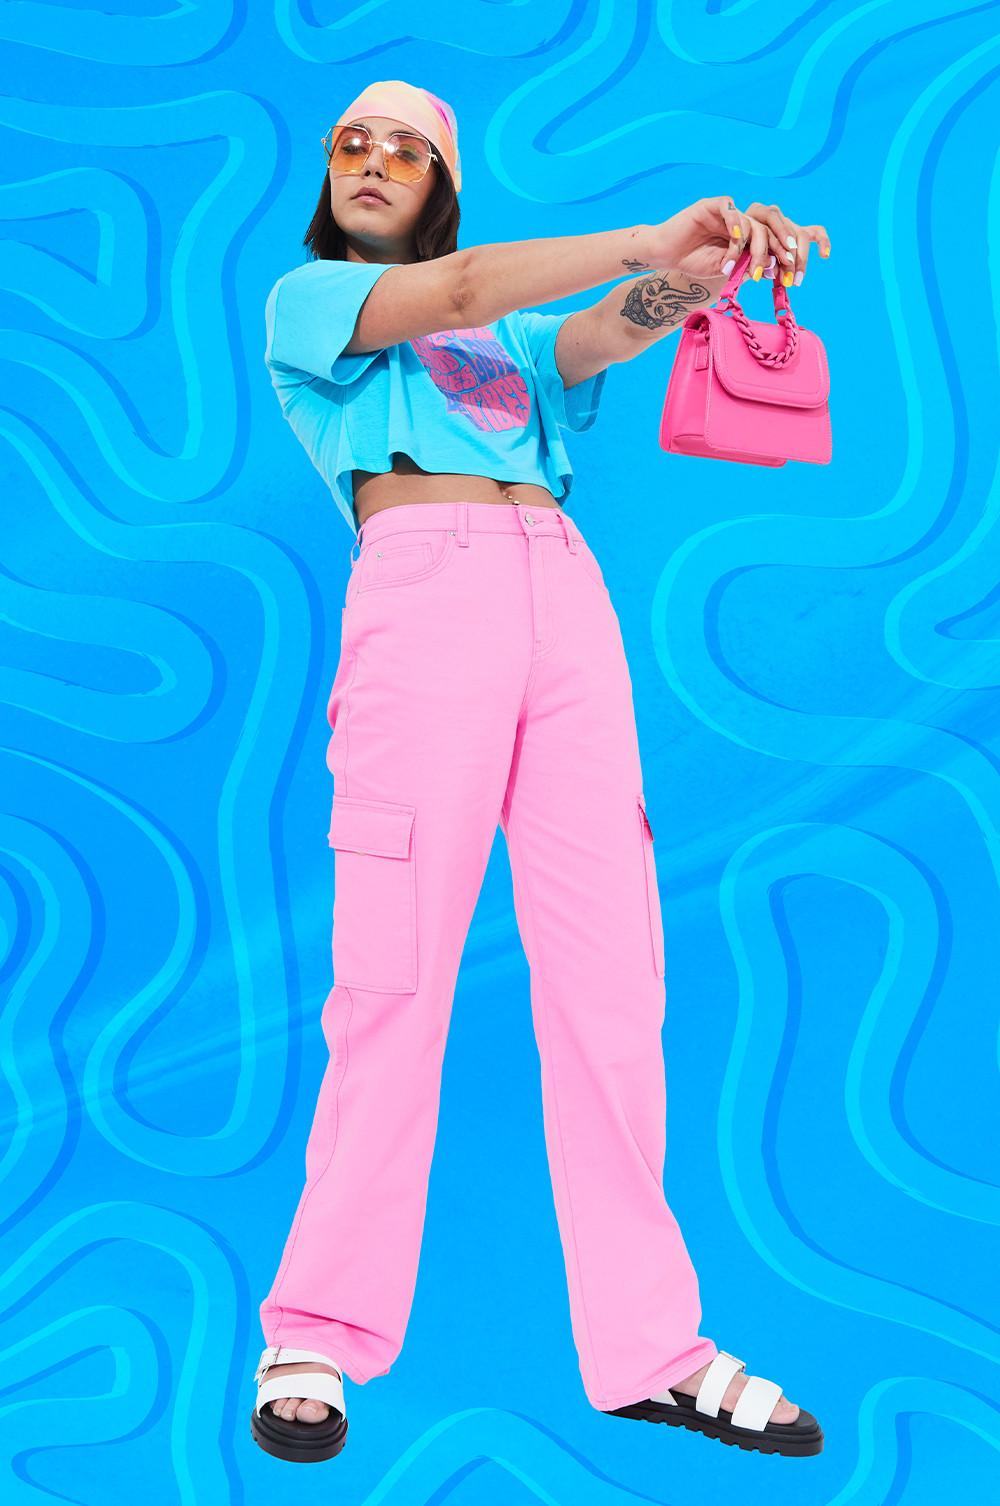 Modelo veste calças cargo rosa-choque, combinadas com top curto azul e lenço no cabelo